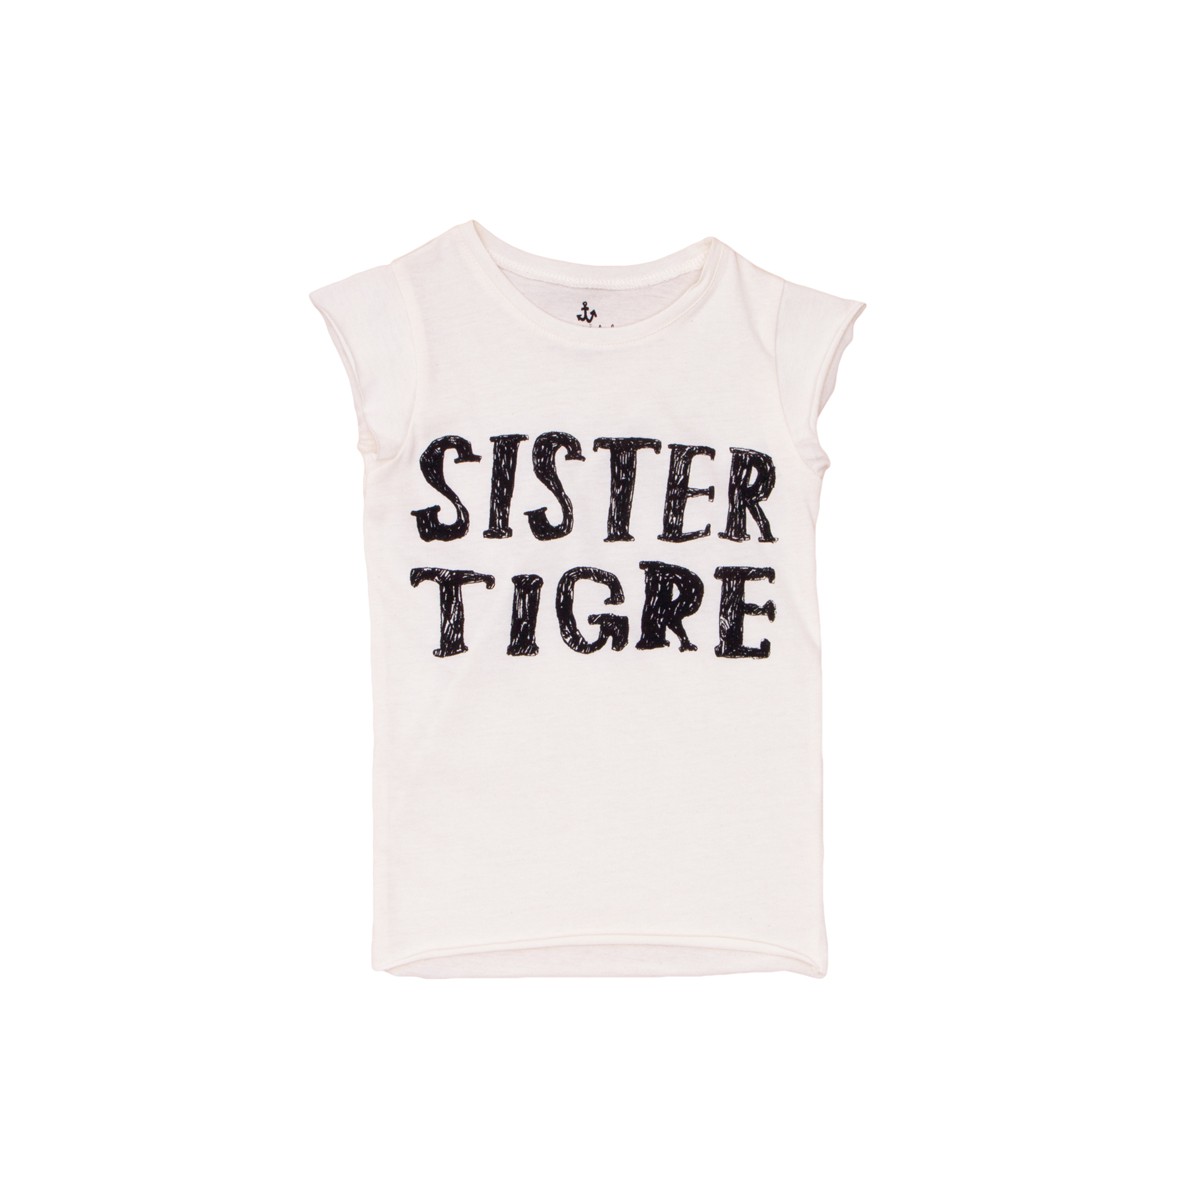 Sister Tigre